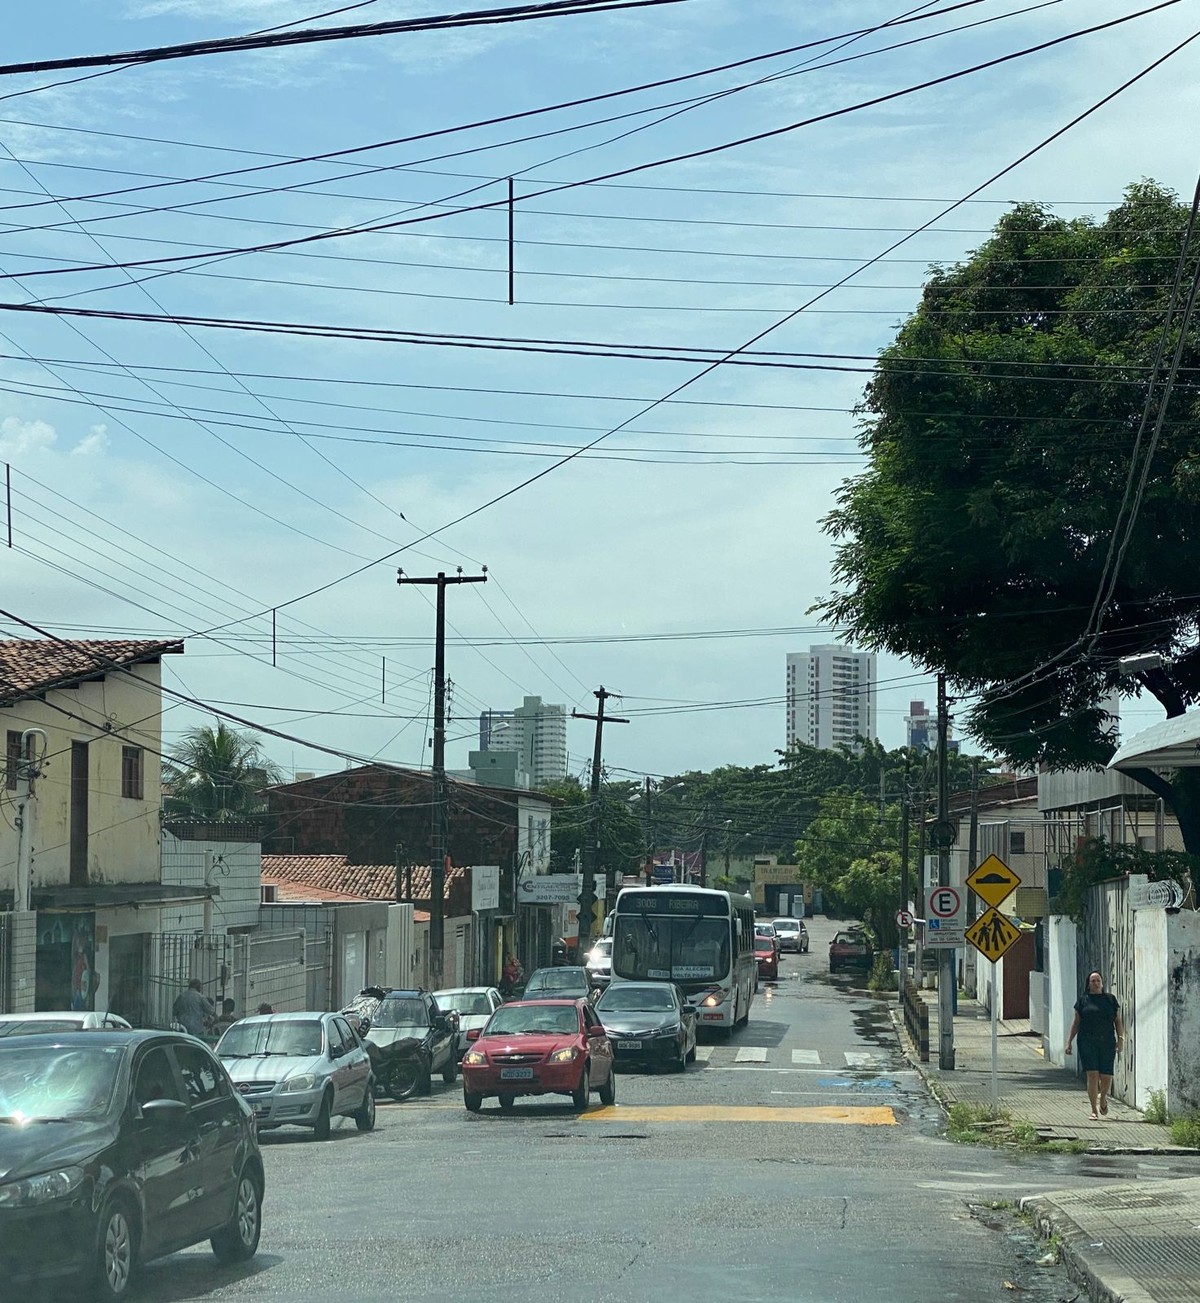 STTU muda itinerário de linhas de ônibus por conta de alagamento entre  avenidas Ayrton Senna e Alagoas em Natal | Rio Grande do Norte | G1